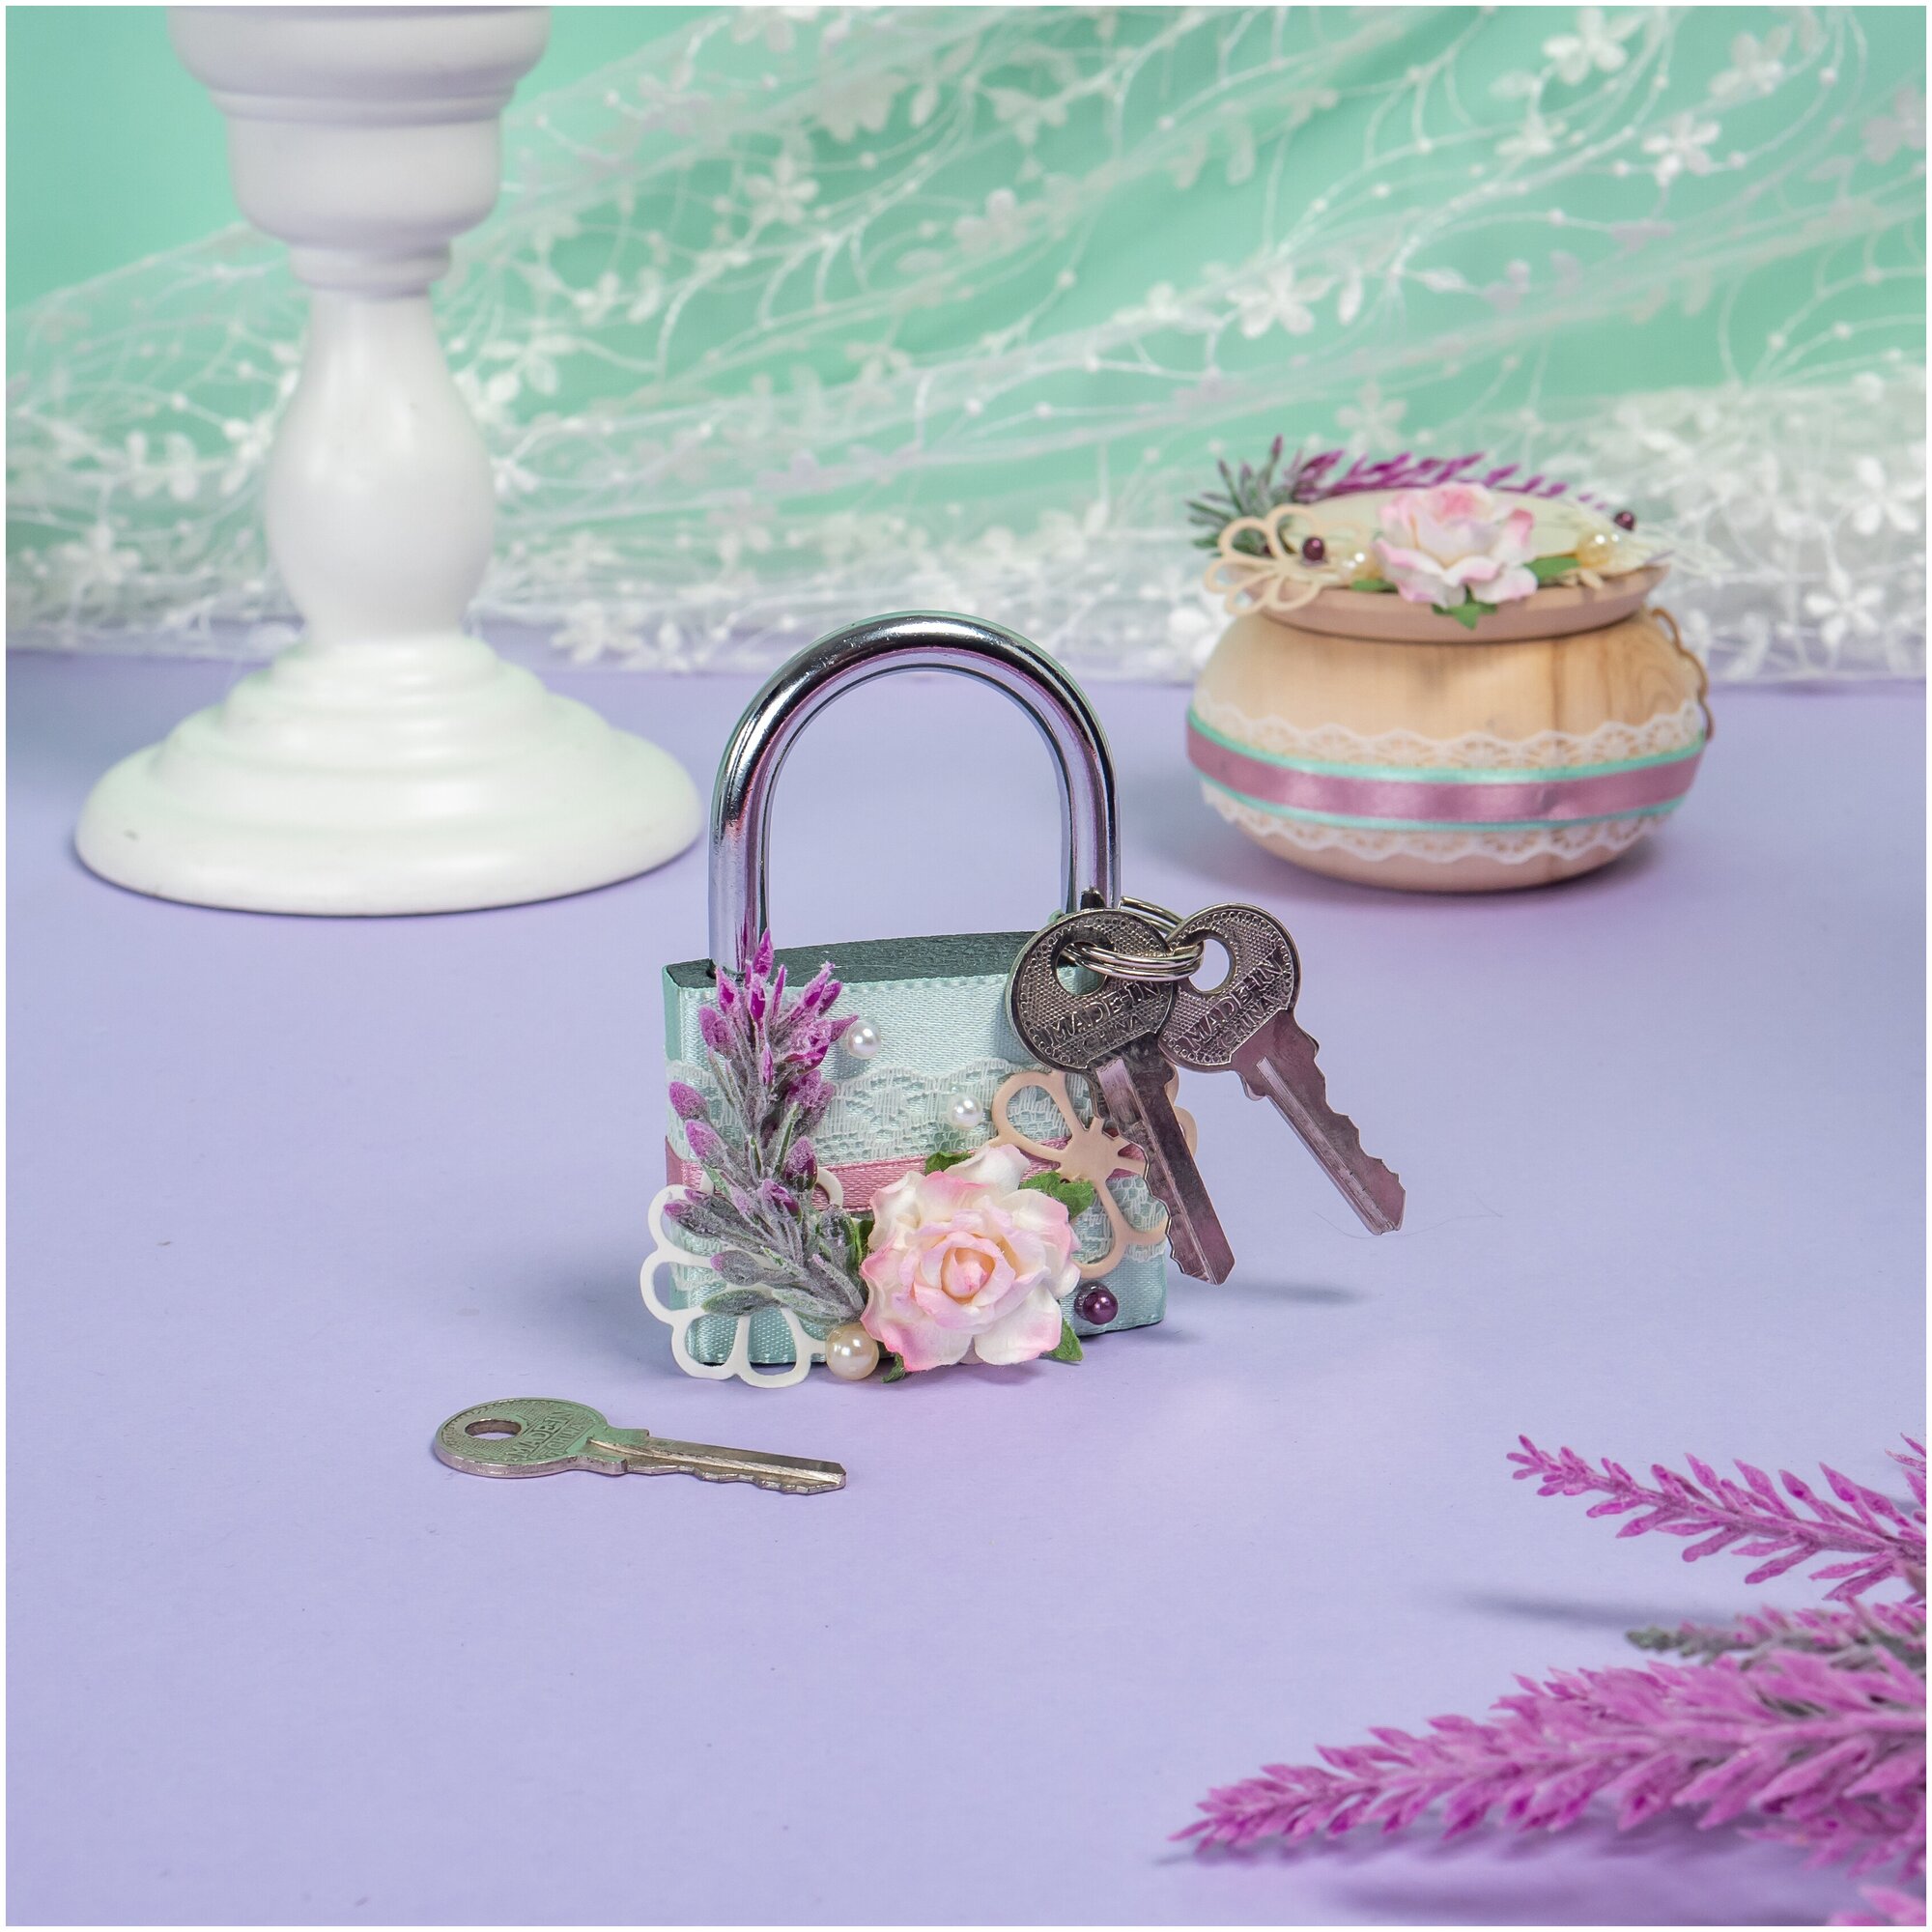 Декоративный замочек любви для жениха и невесты на свадьбу "Нимфа" с декором в бирюзовых и розовых тонах, с сиреневой веточкой и бумажной розой